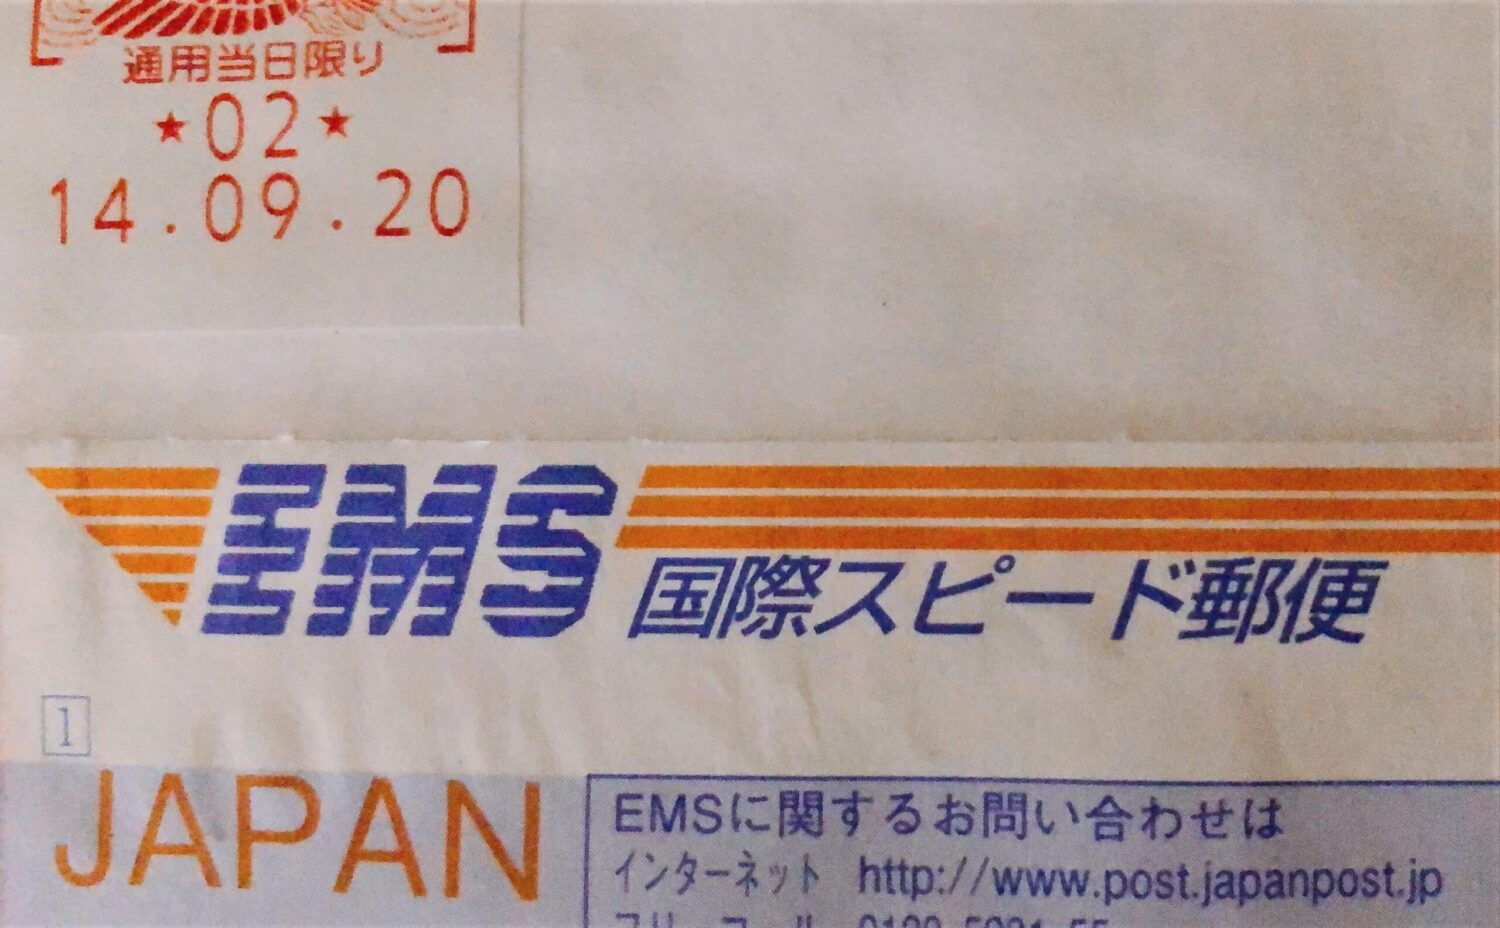 コロナ禍の国際郵便 遅延気味 日本 台湾配達日数の記録